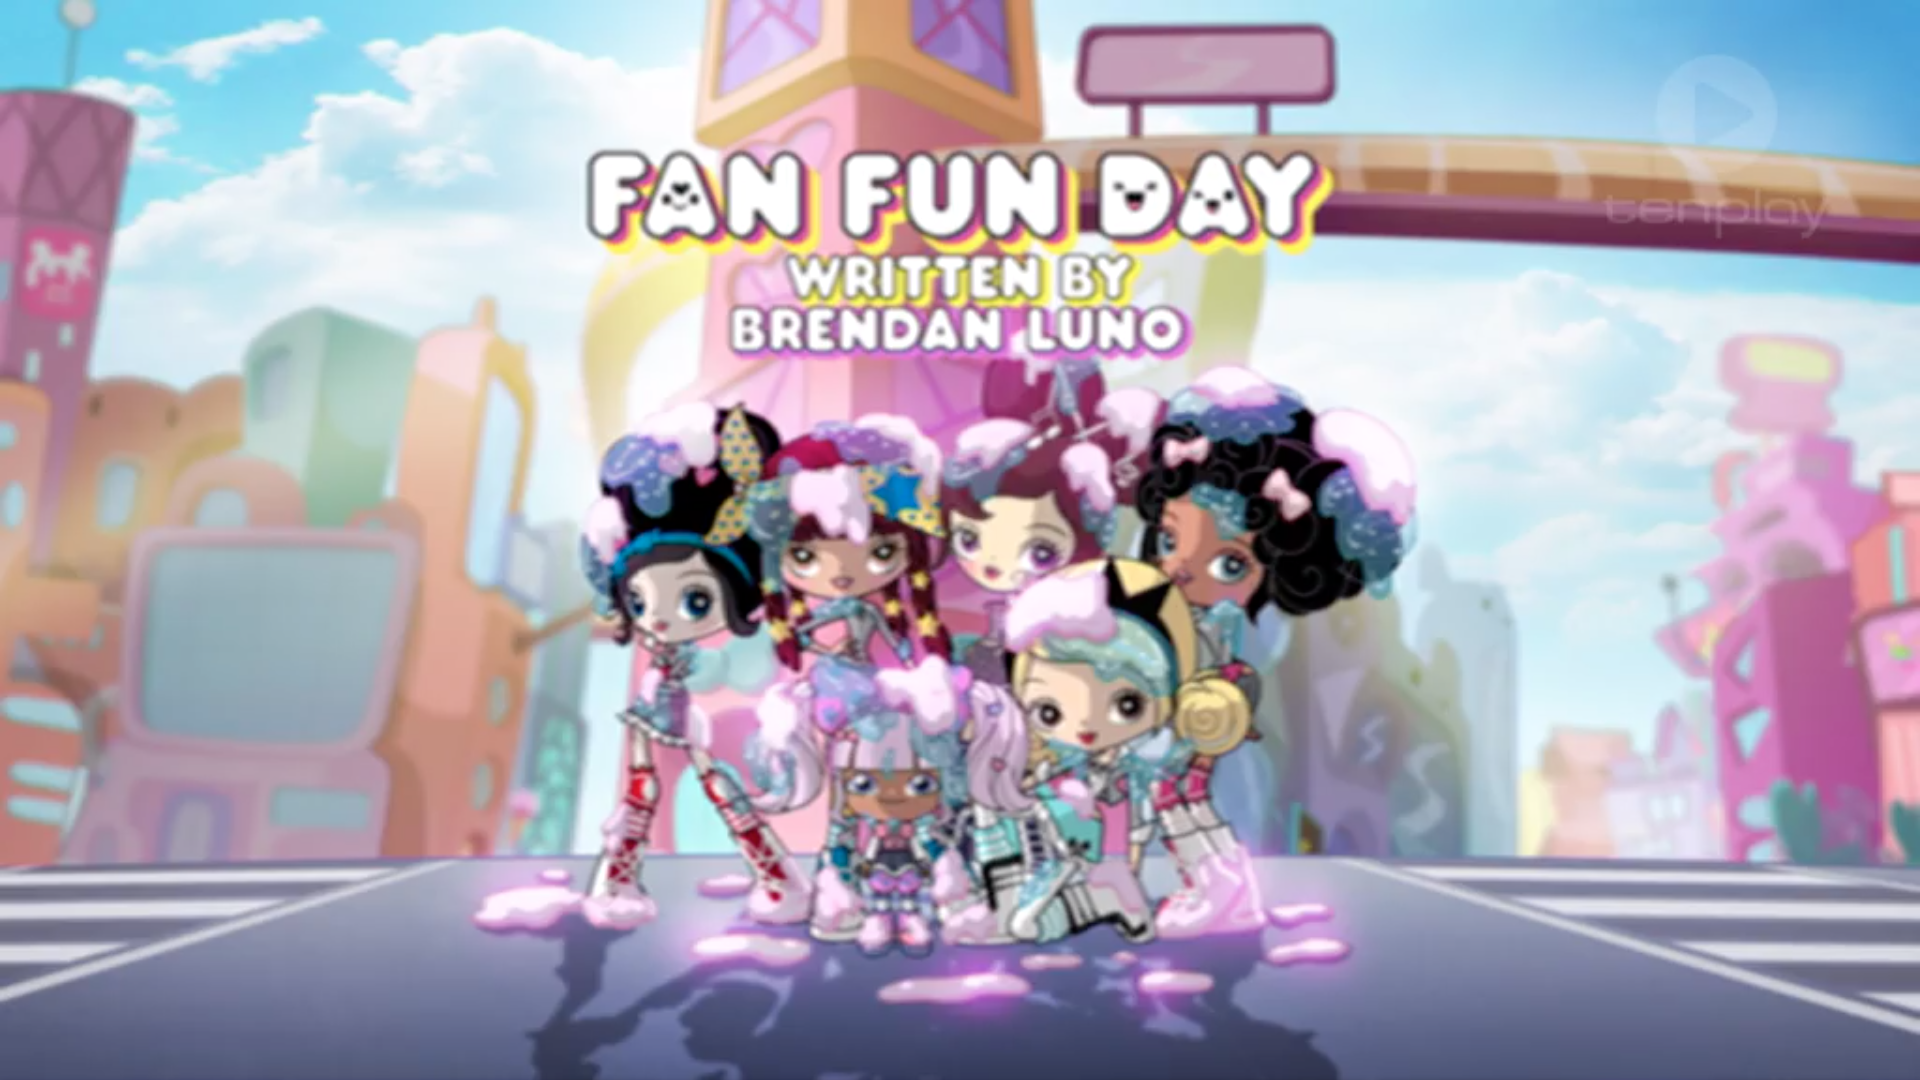 Fan Fun Day. Kuu Kuu Harajuku